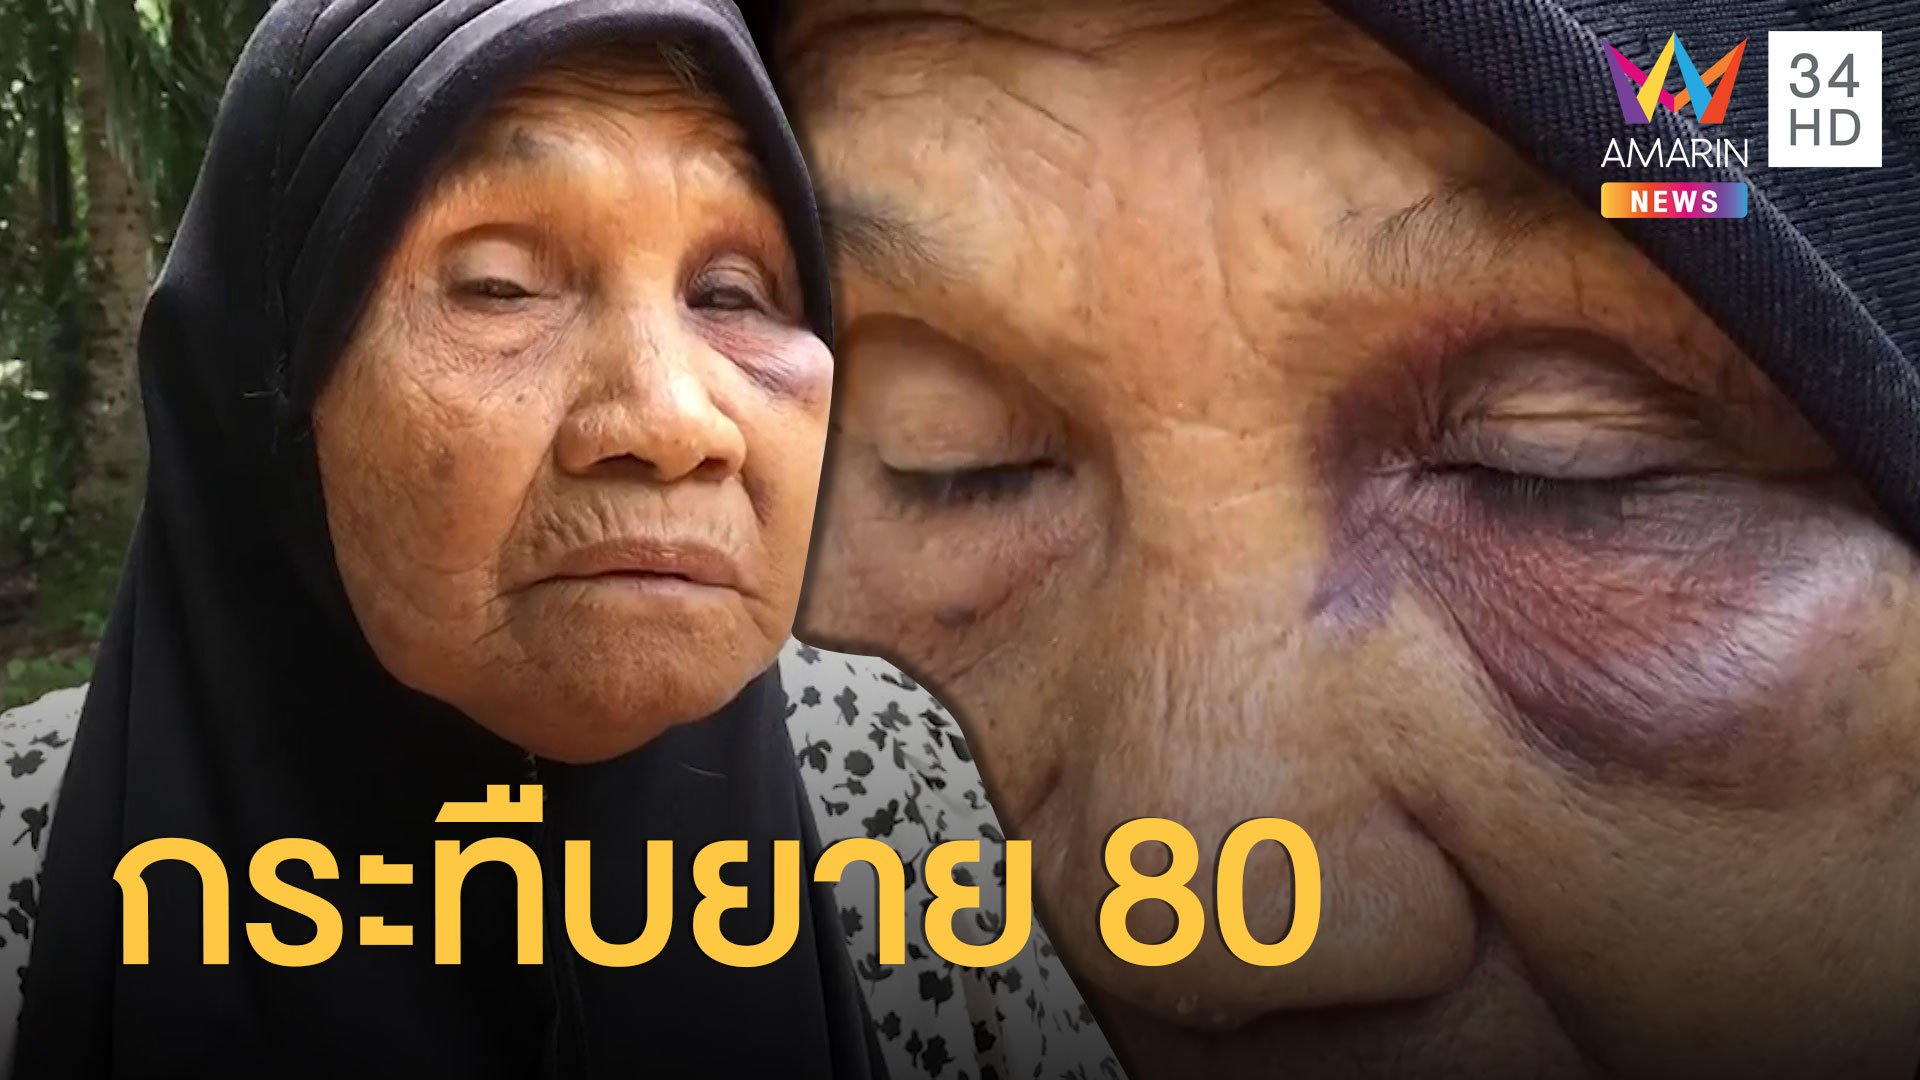 ยายวัย 80 โดนหลานสาวแท้ๆ กระทืบจนน่วม | ข่าวเที่ยงอมรินทร์ | 16 ก.ค. 63 | AMARIN TVHD34